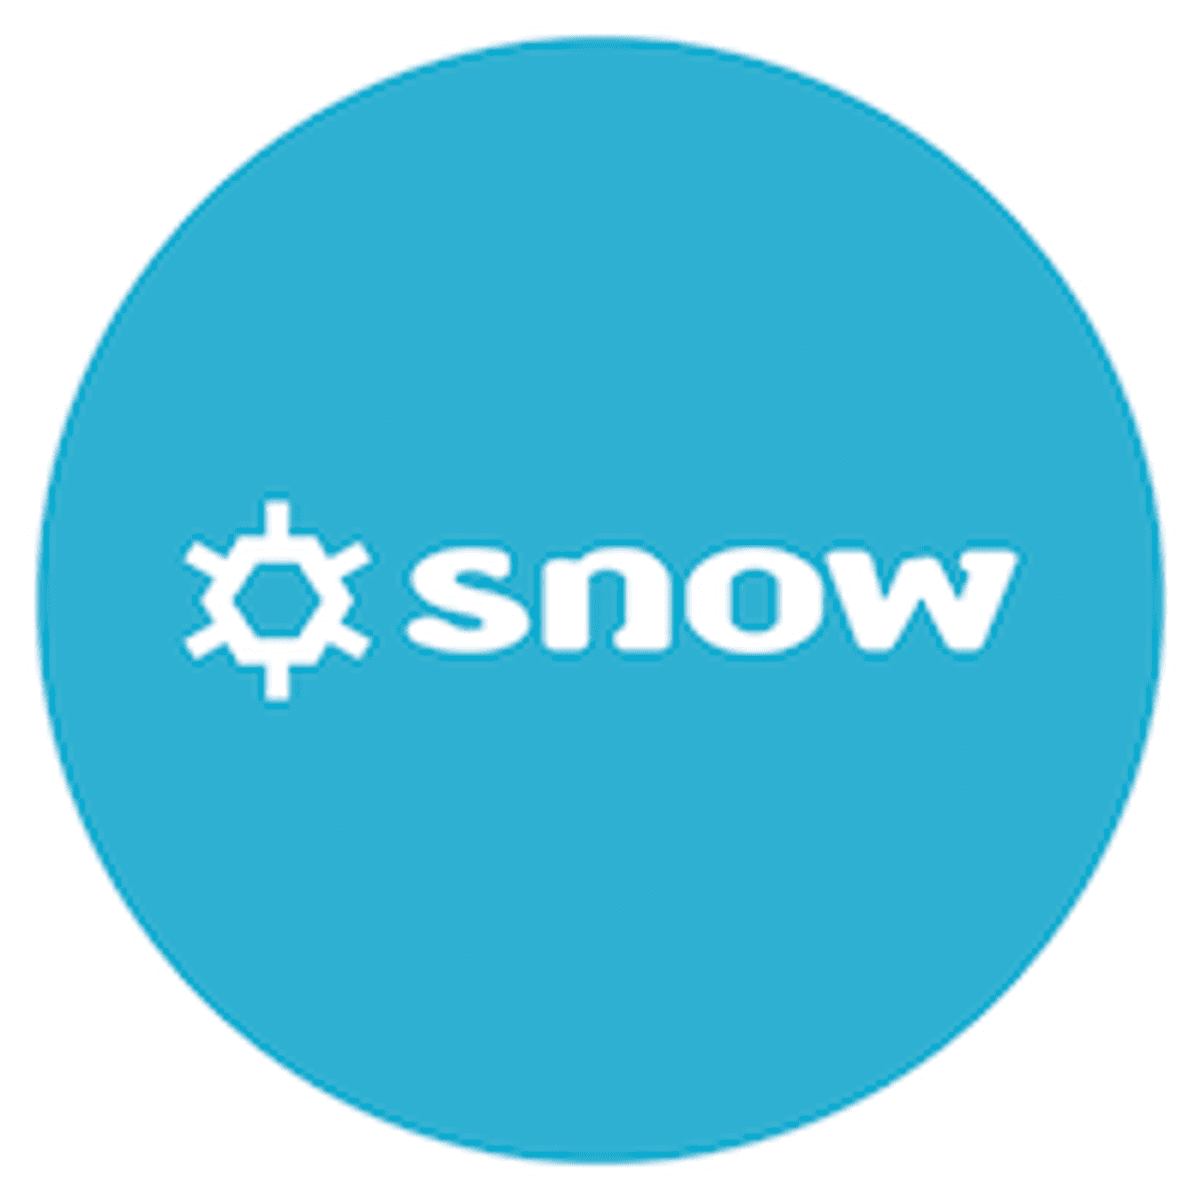 Snow Software overschrijdt honderd miljoen dollar aan wereldwijde omzet image